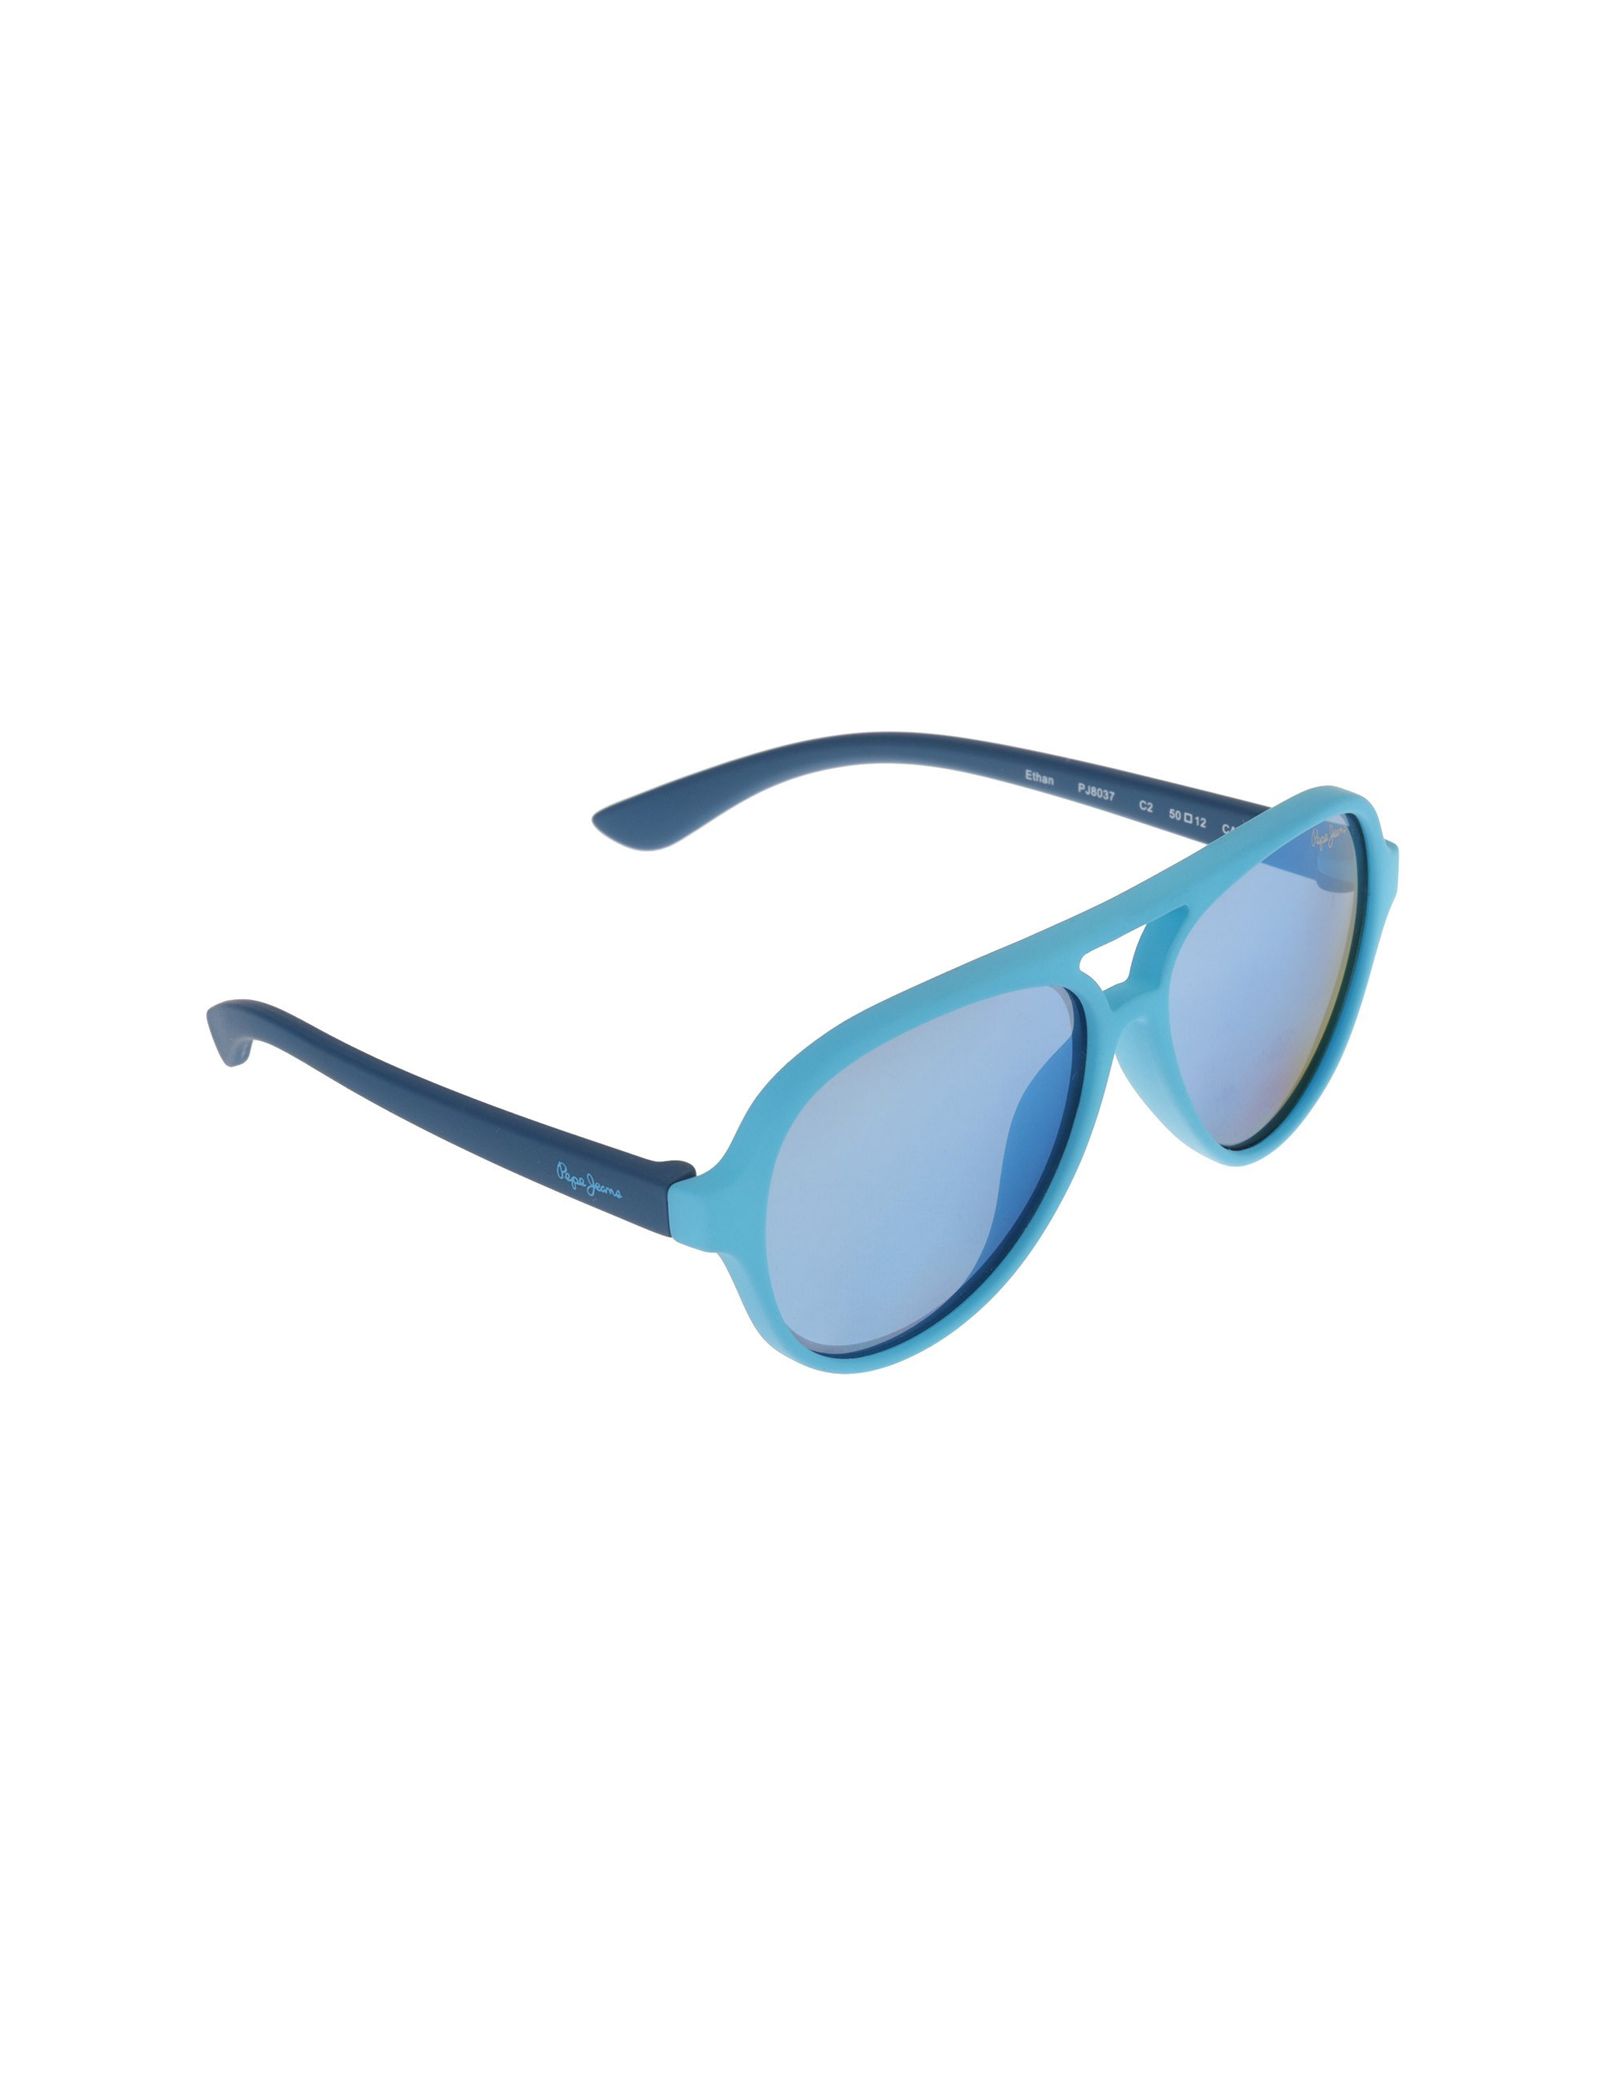 عینک آفتابی خلبانی بچگانه - پپه جینز - آبي روشن - 3